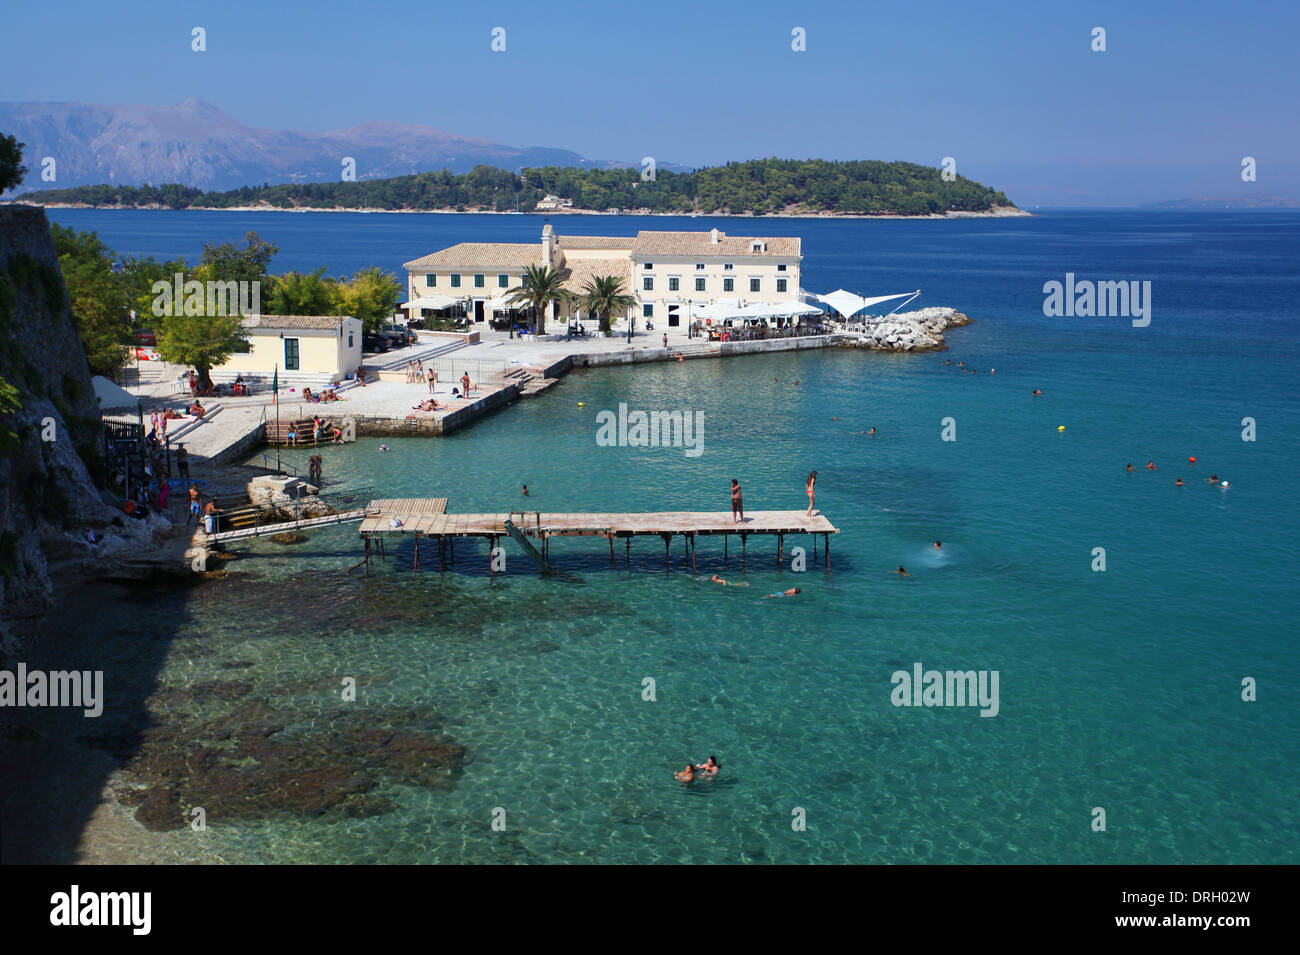 La isla griega de Corfú Foto de stock